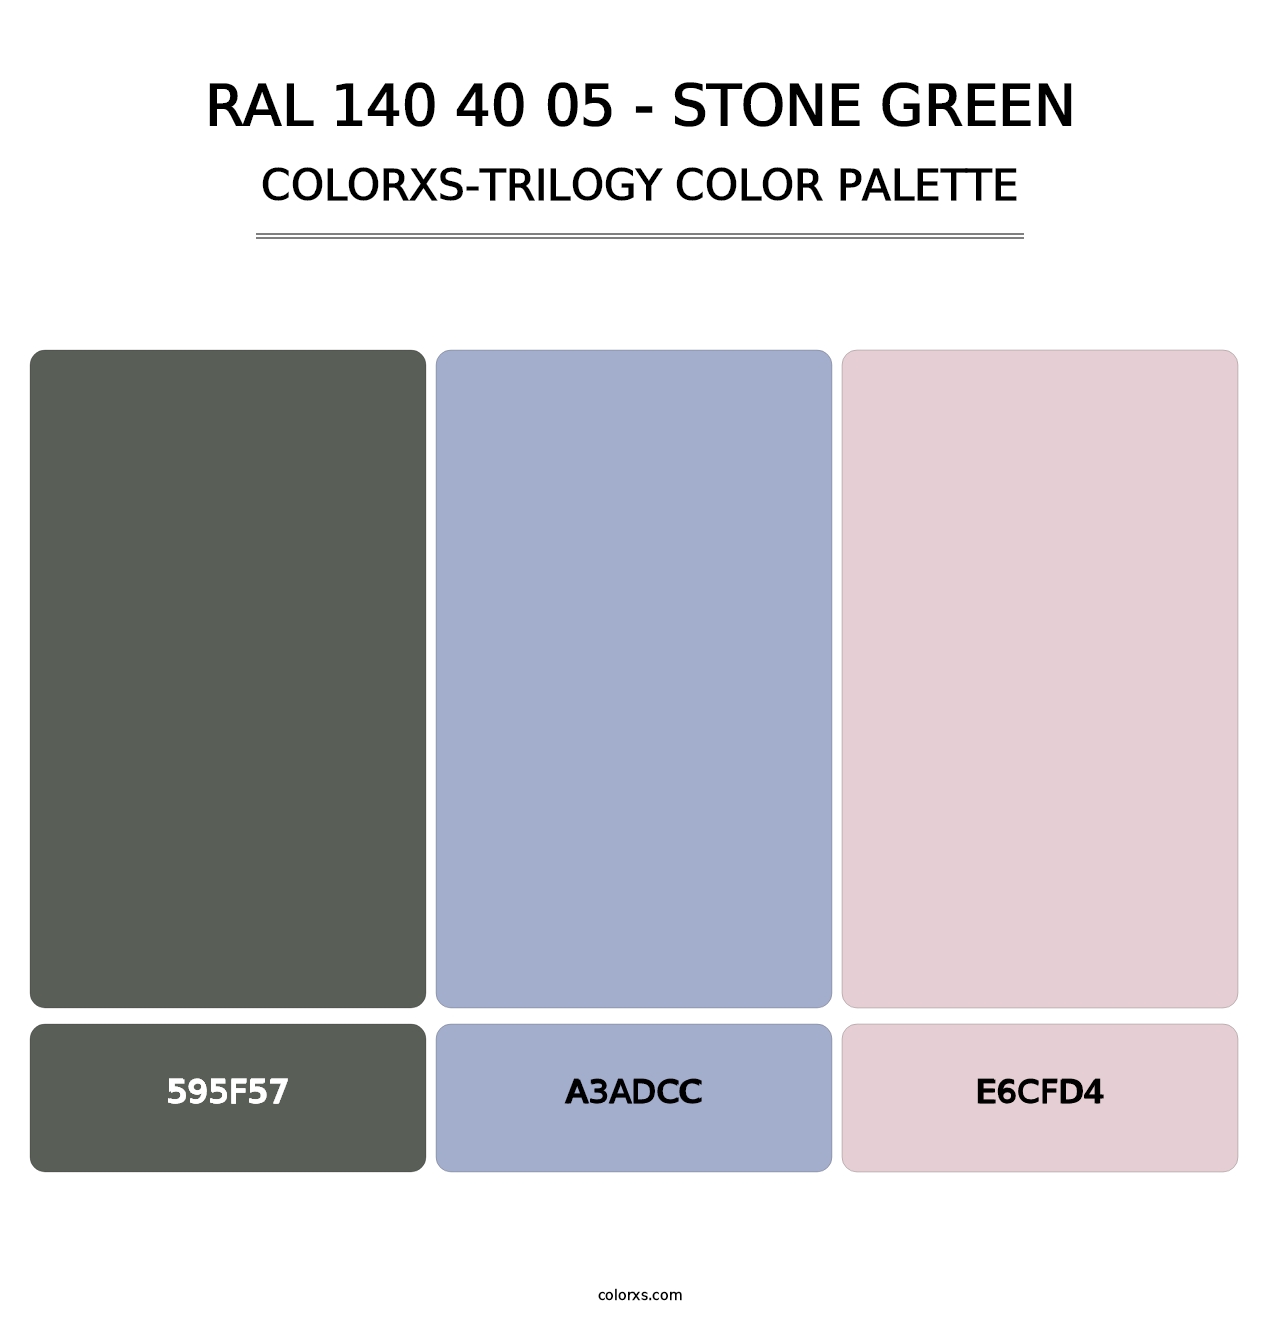 RAL 140 40 05 - Stone Green - Colorxs Trilogy Palette